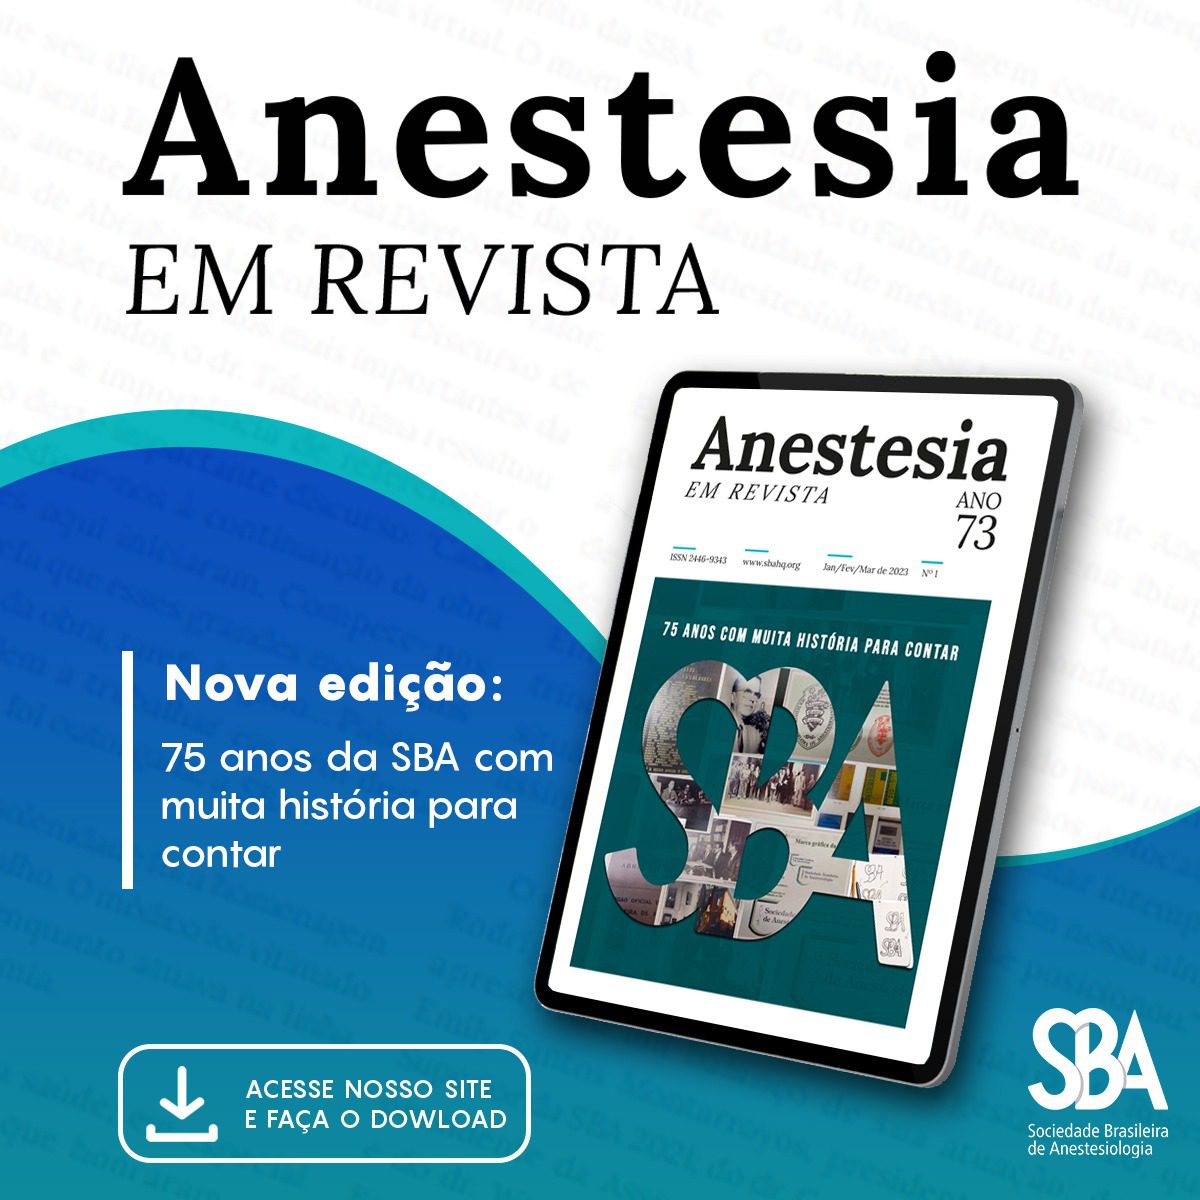 Nova edição da Anestesia em Revista já está disponível